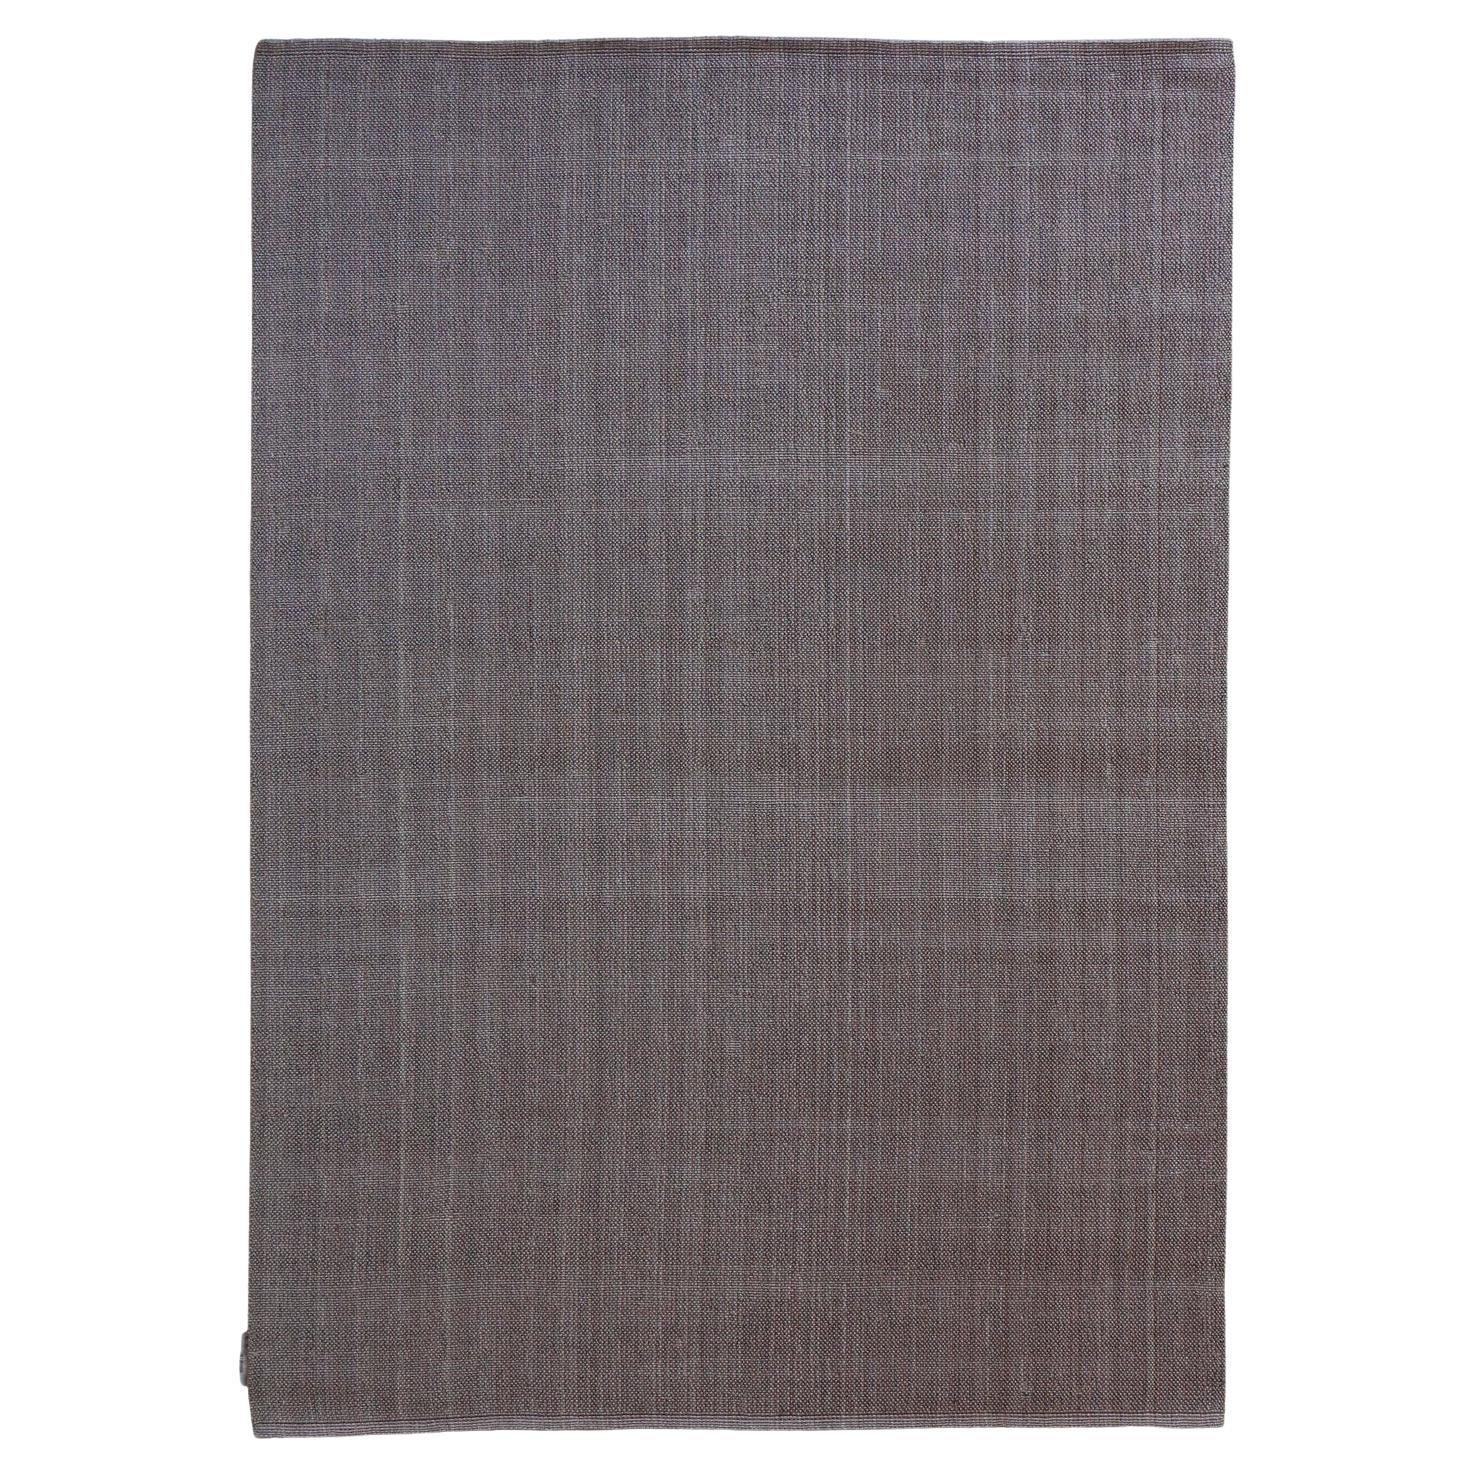 Contemporary Design Grau Flieder Teppich von Deanna Comellini Auf Lager 170x240 cm